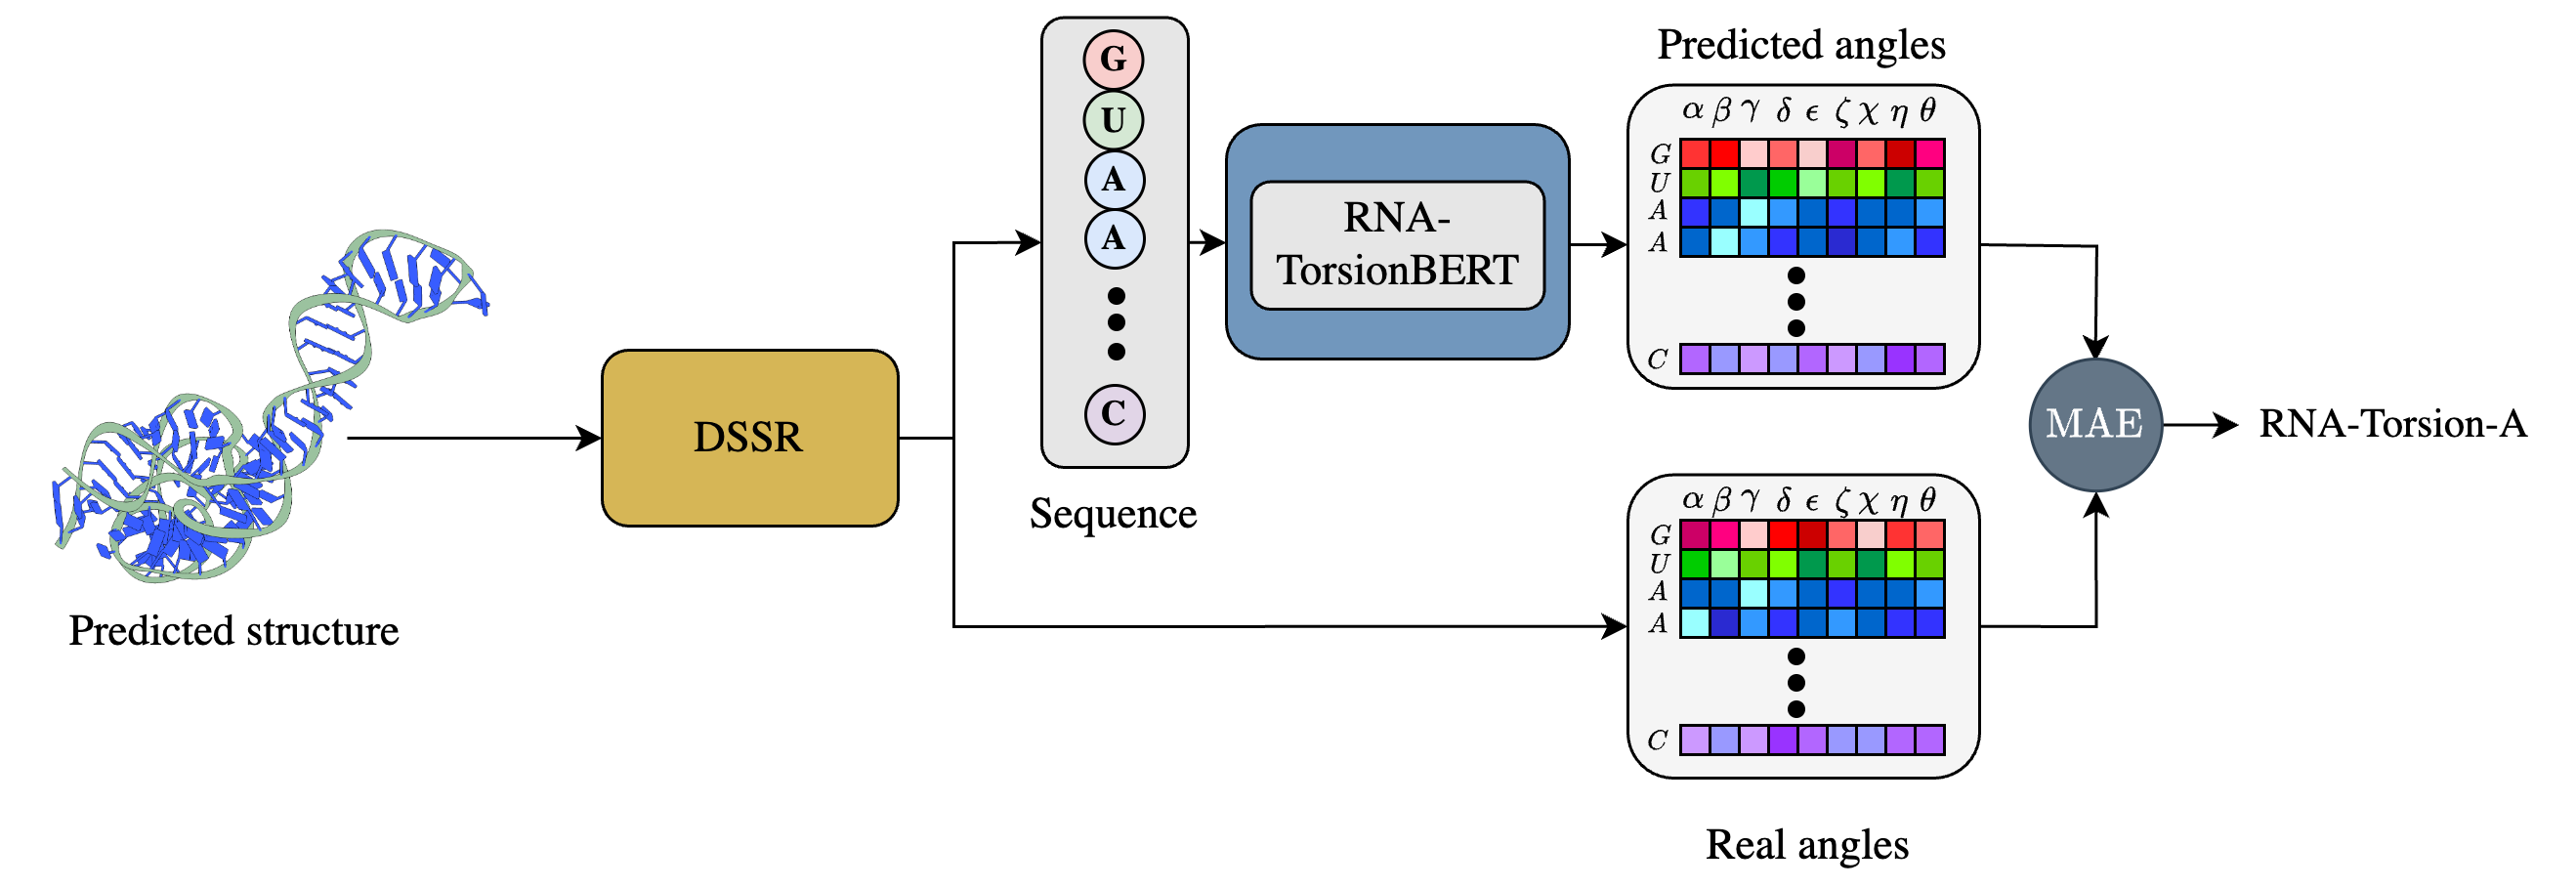 RNA-Torsion-A